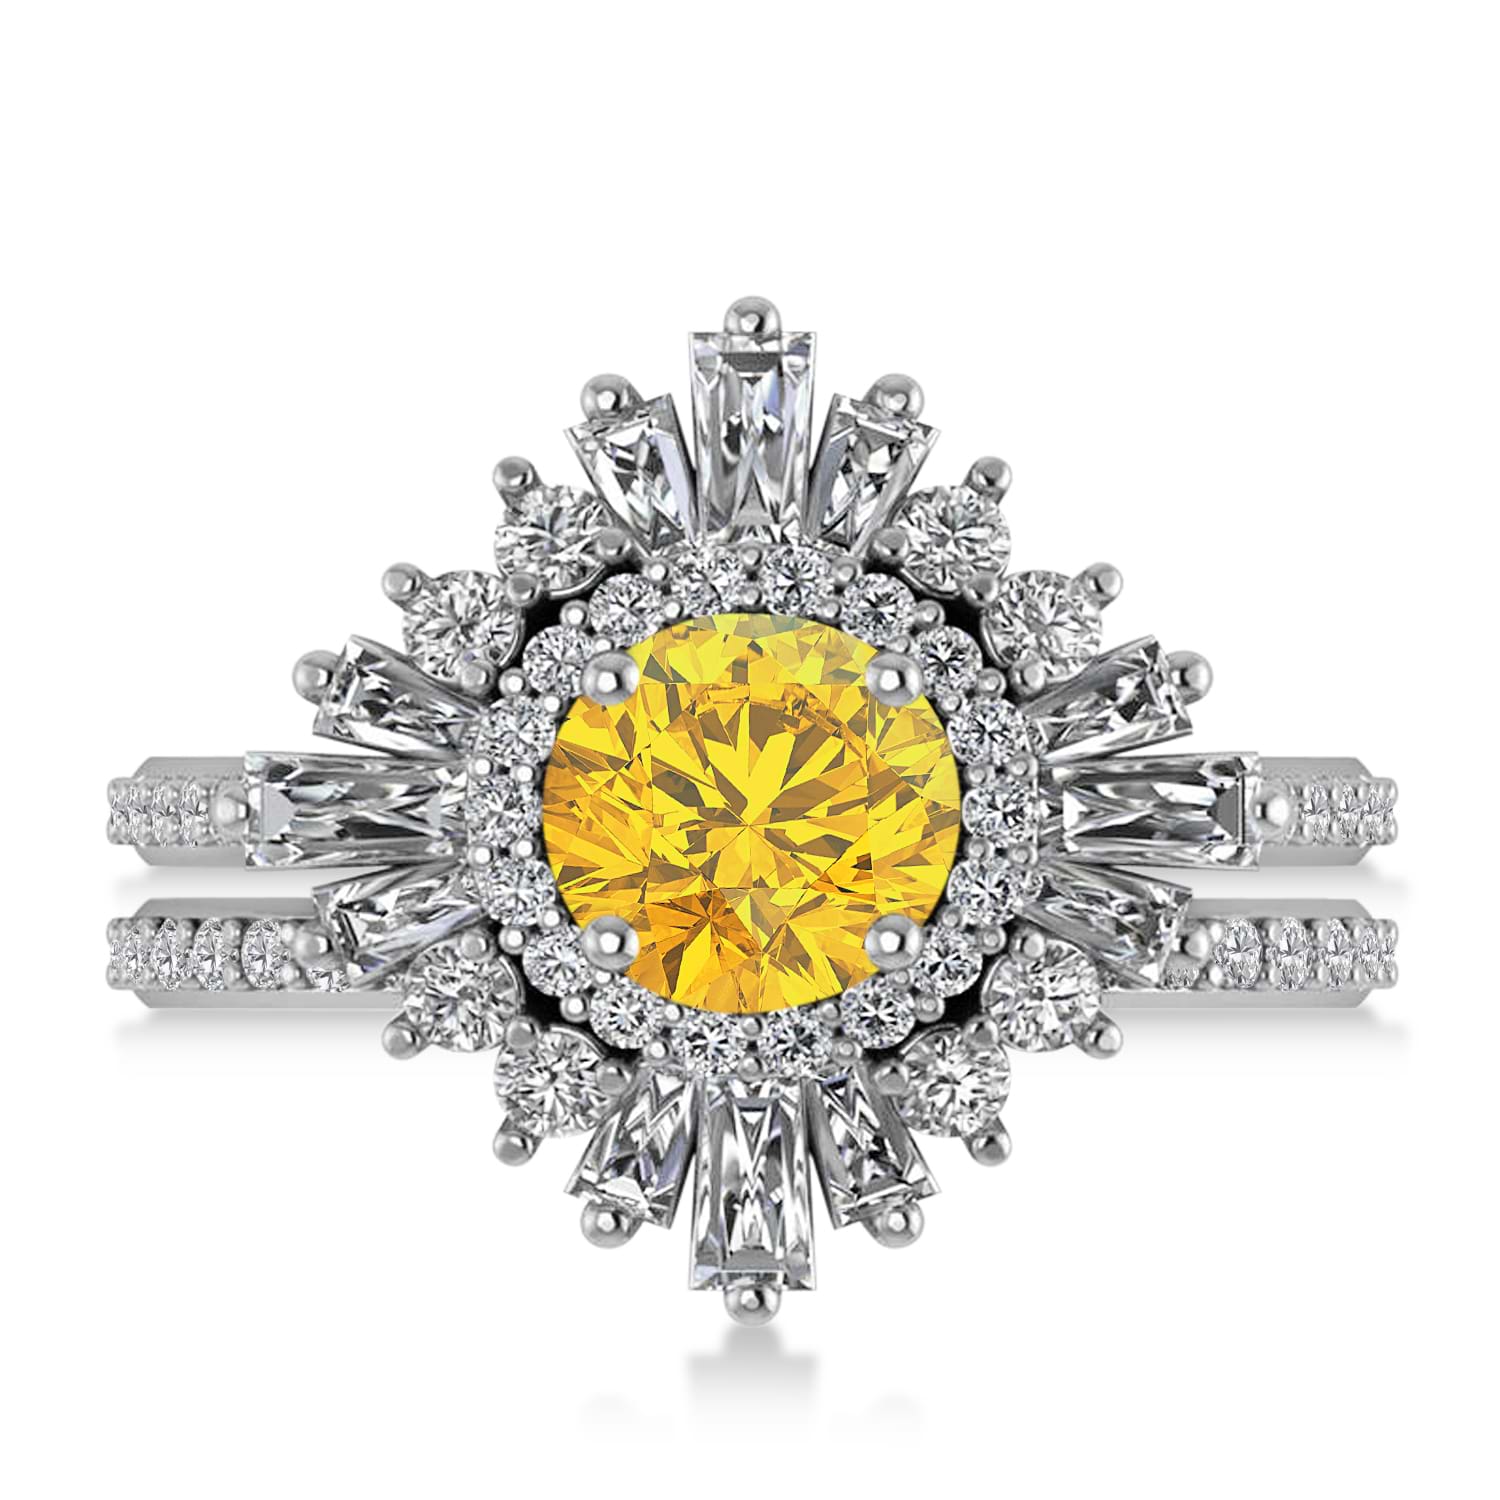 Yellow Sapphire & Diamond Ballerina Engagement Ring Platinum (2.74 ctw)